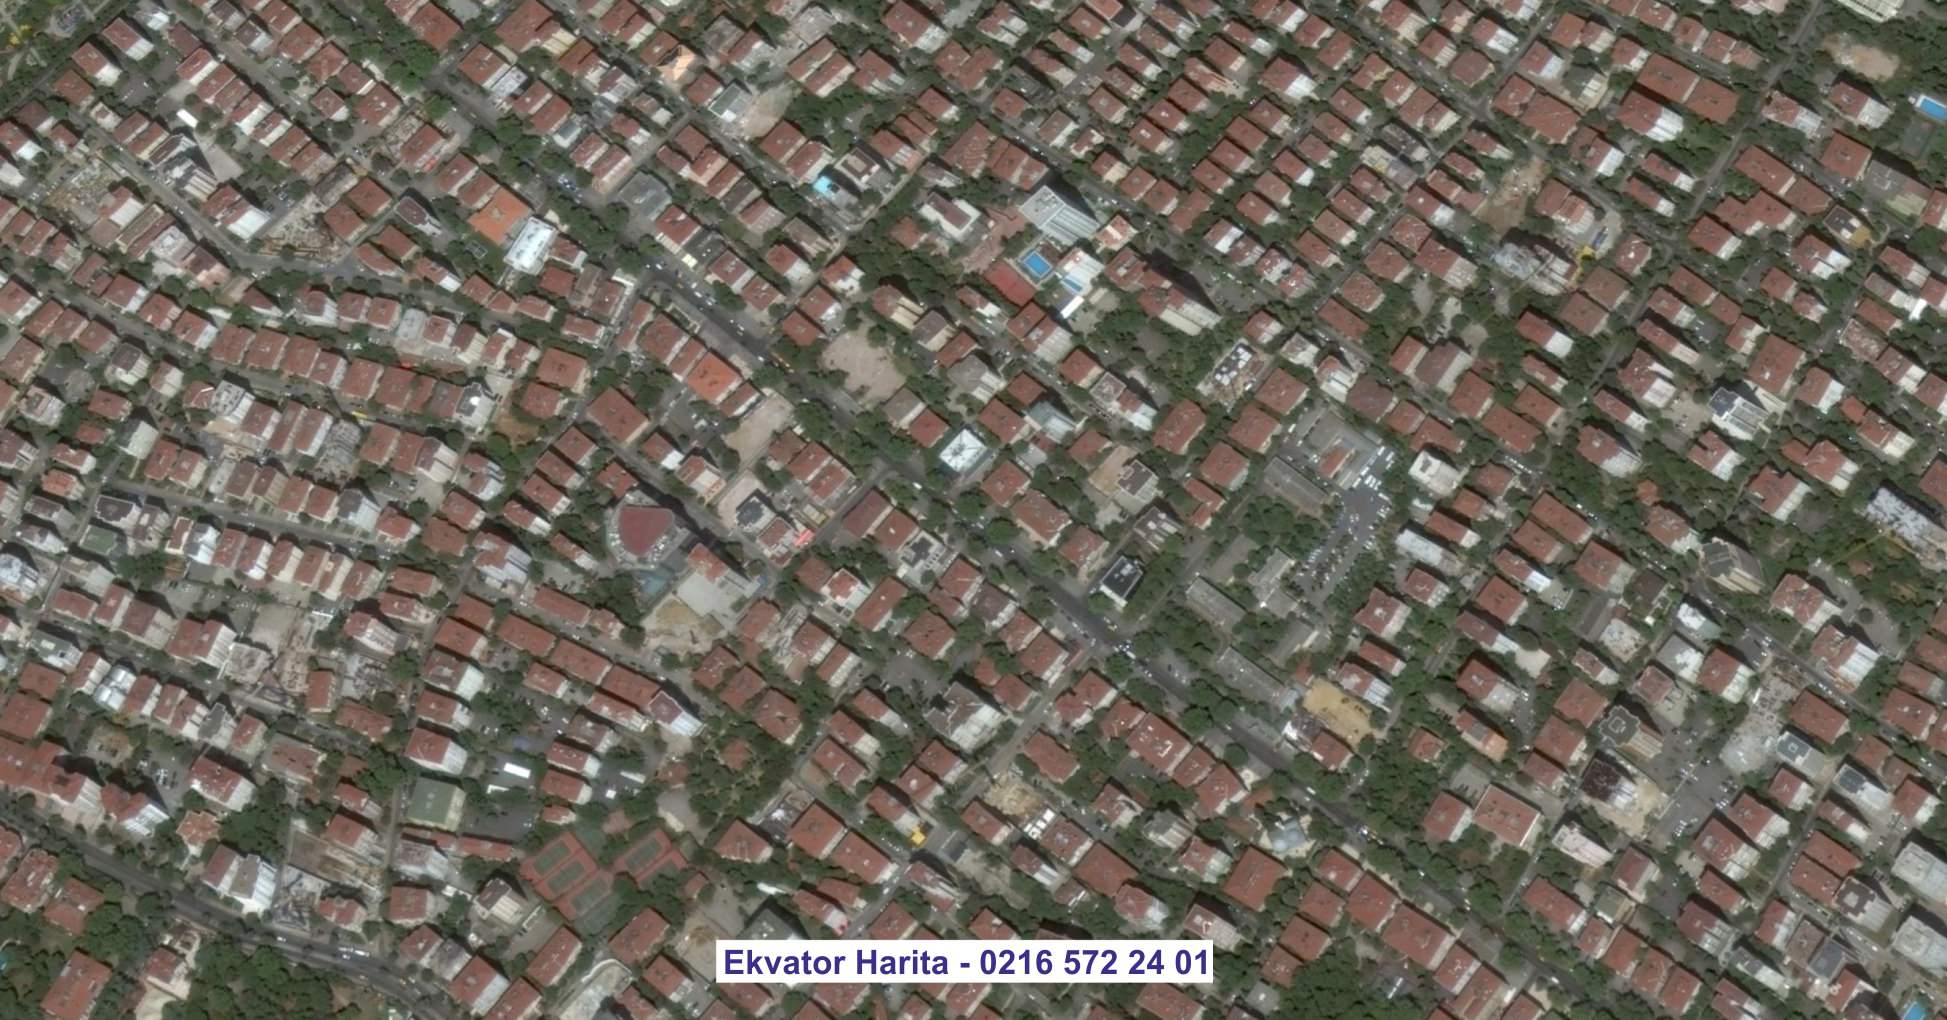 Niğde Uydu Görüntüsü Örnek Fotoğrafı